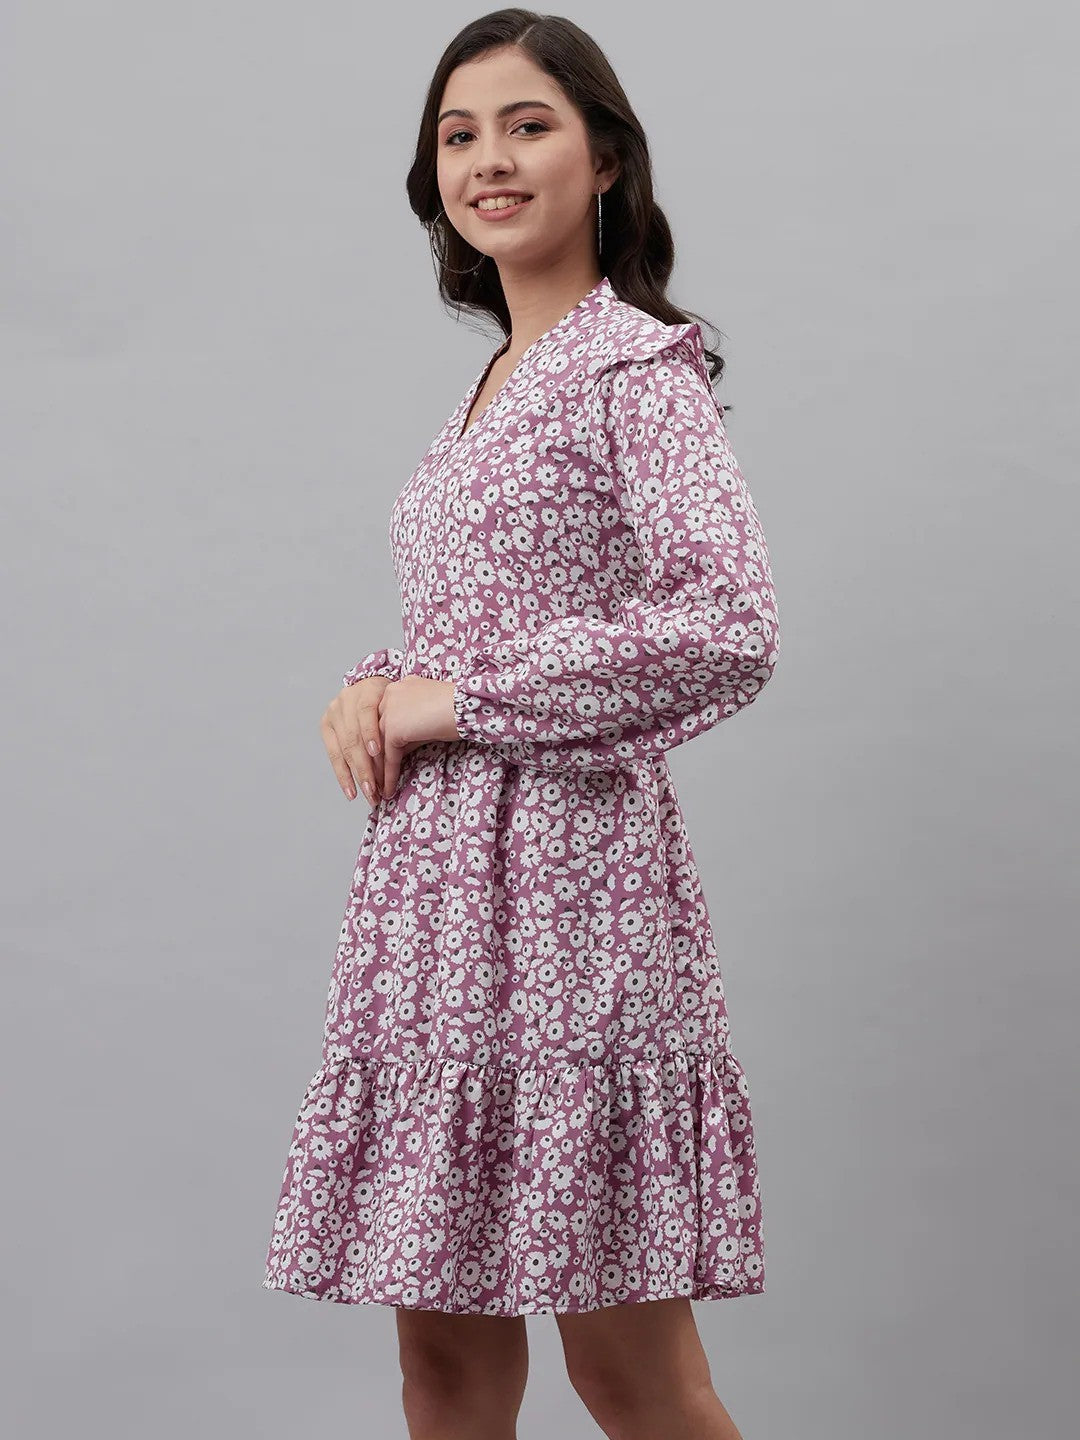 plusS Lavender  Off White Floral Print A-Line Dress